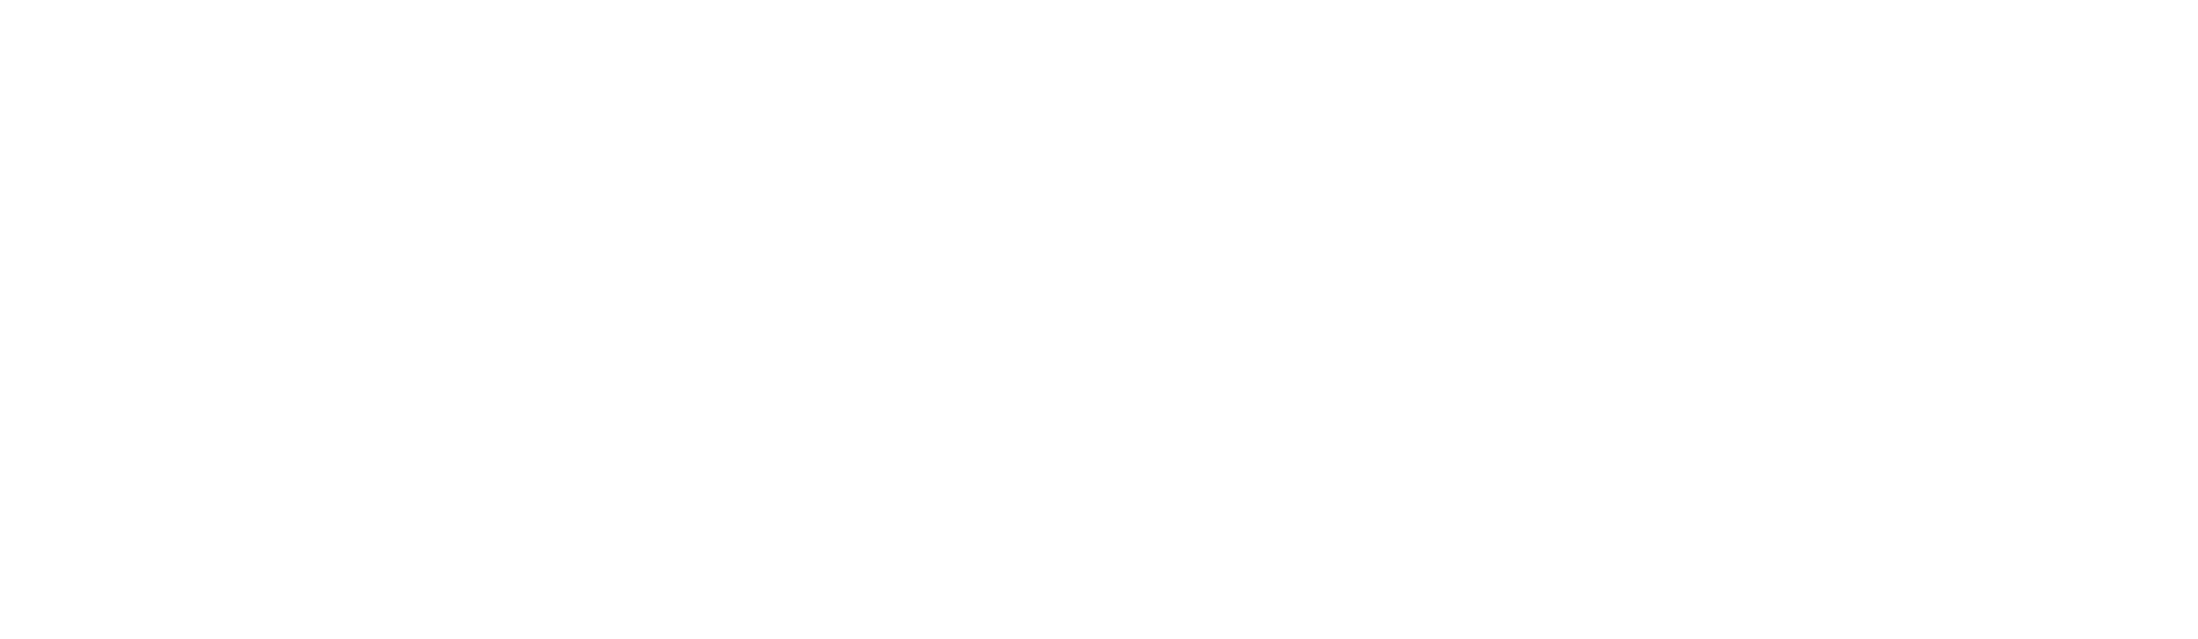 Hillstart For L Drivers Logo White